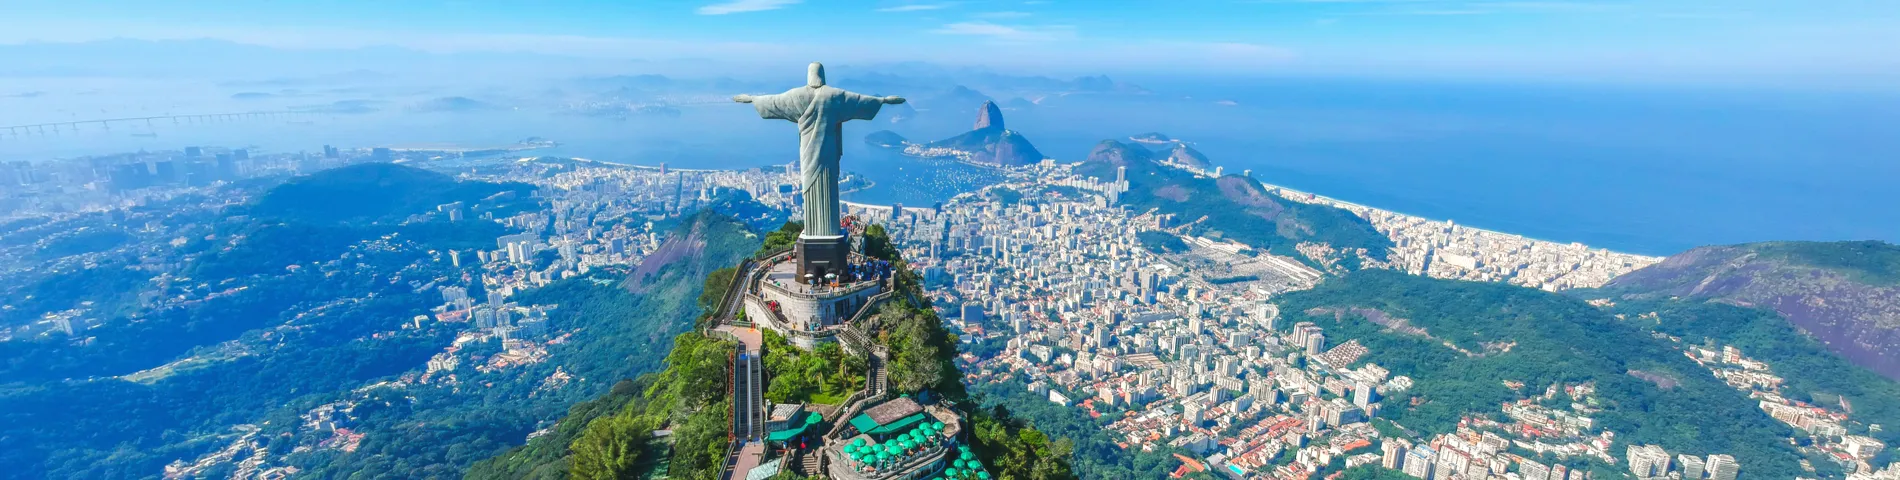 ประเทศบราซิล - หลักสูตรมาตรฐาน